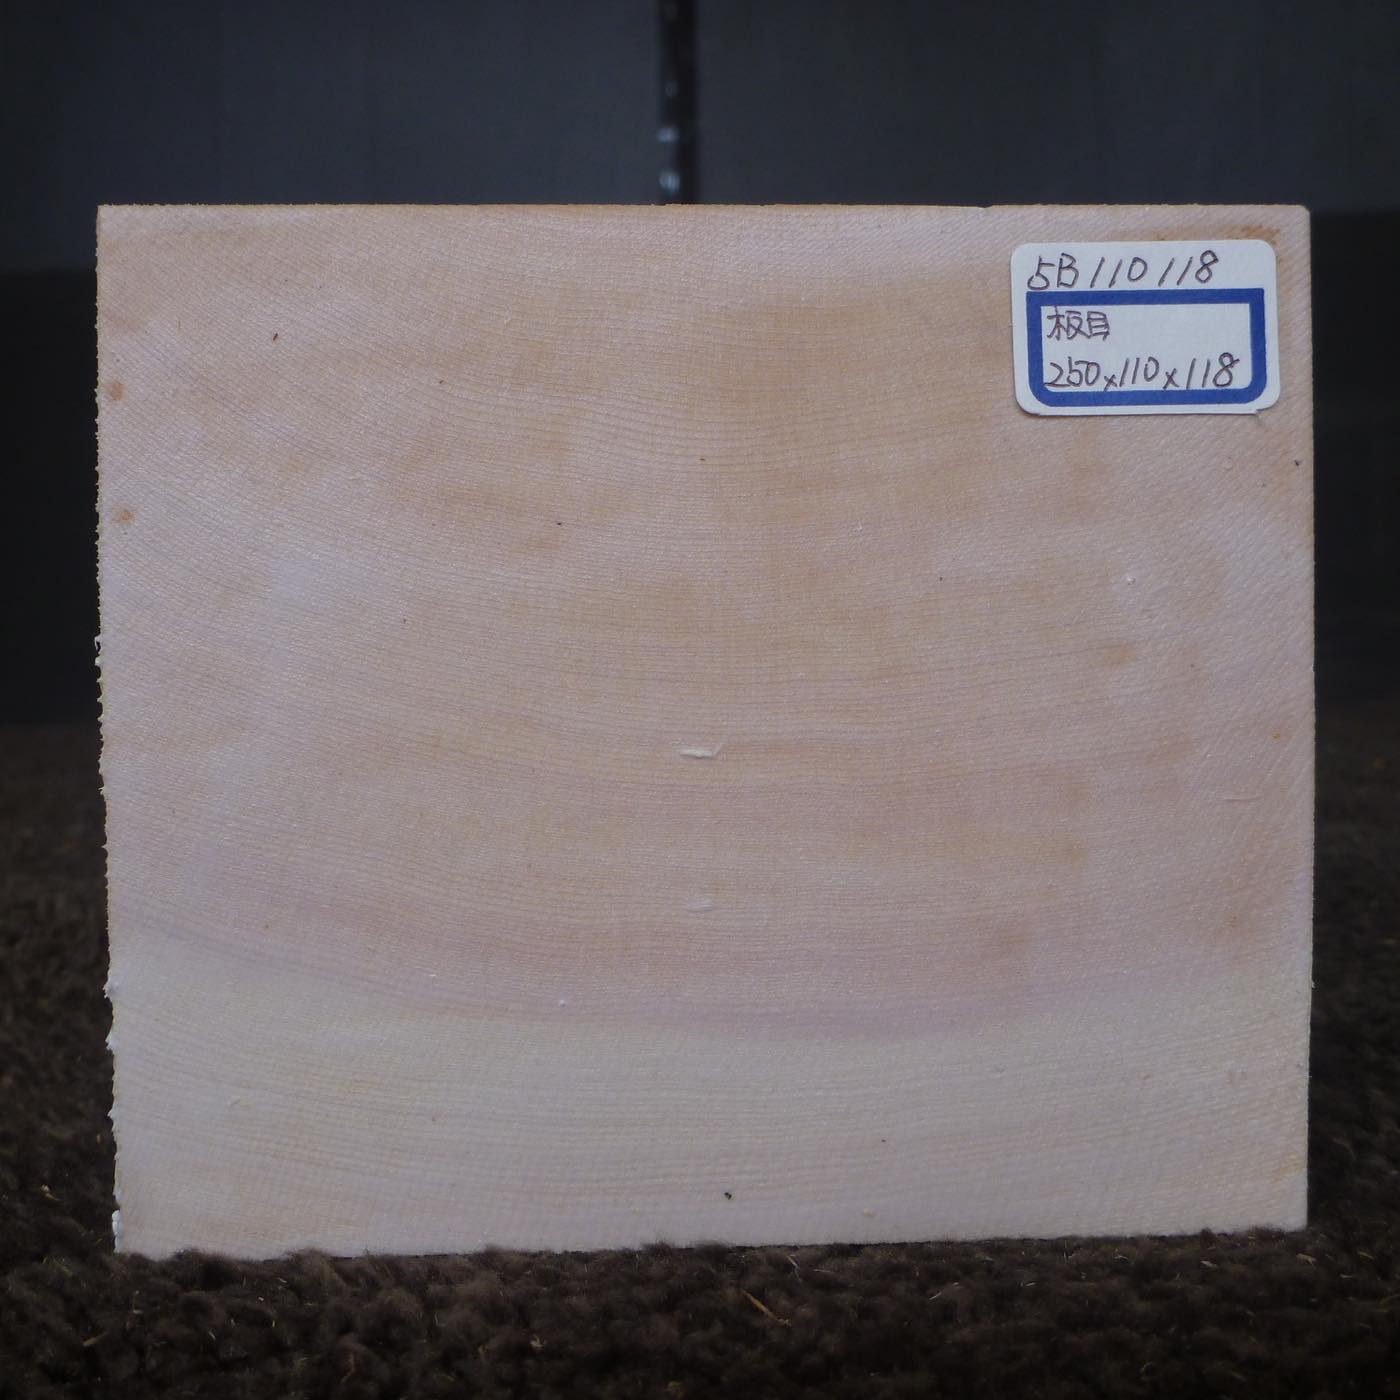 彫刻材 天然木曽檜 板目盤 ラフ材 L250×T110×W118mm 5B110118 Bグレード 定番商品